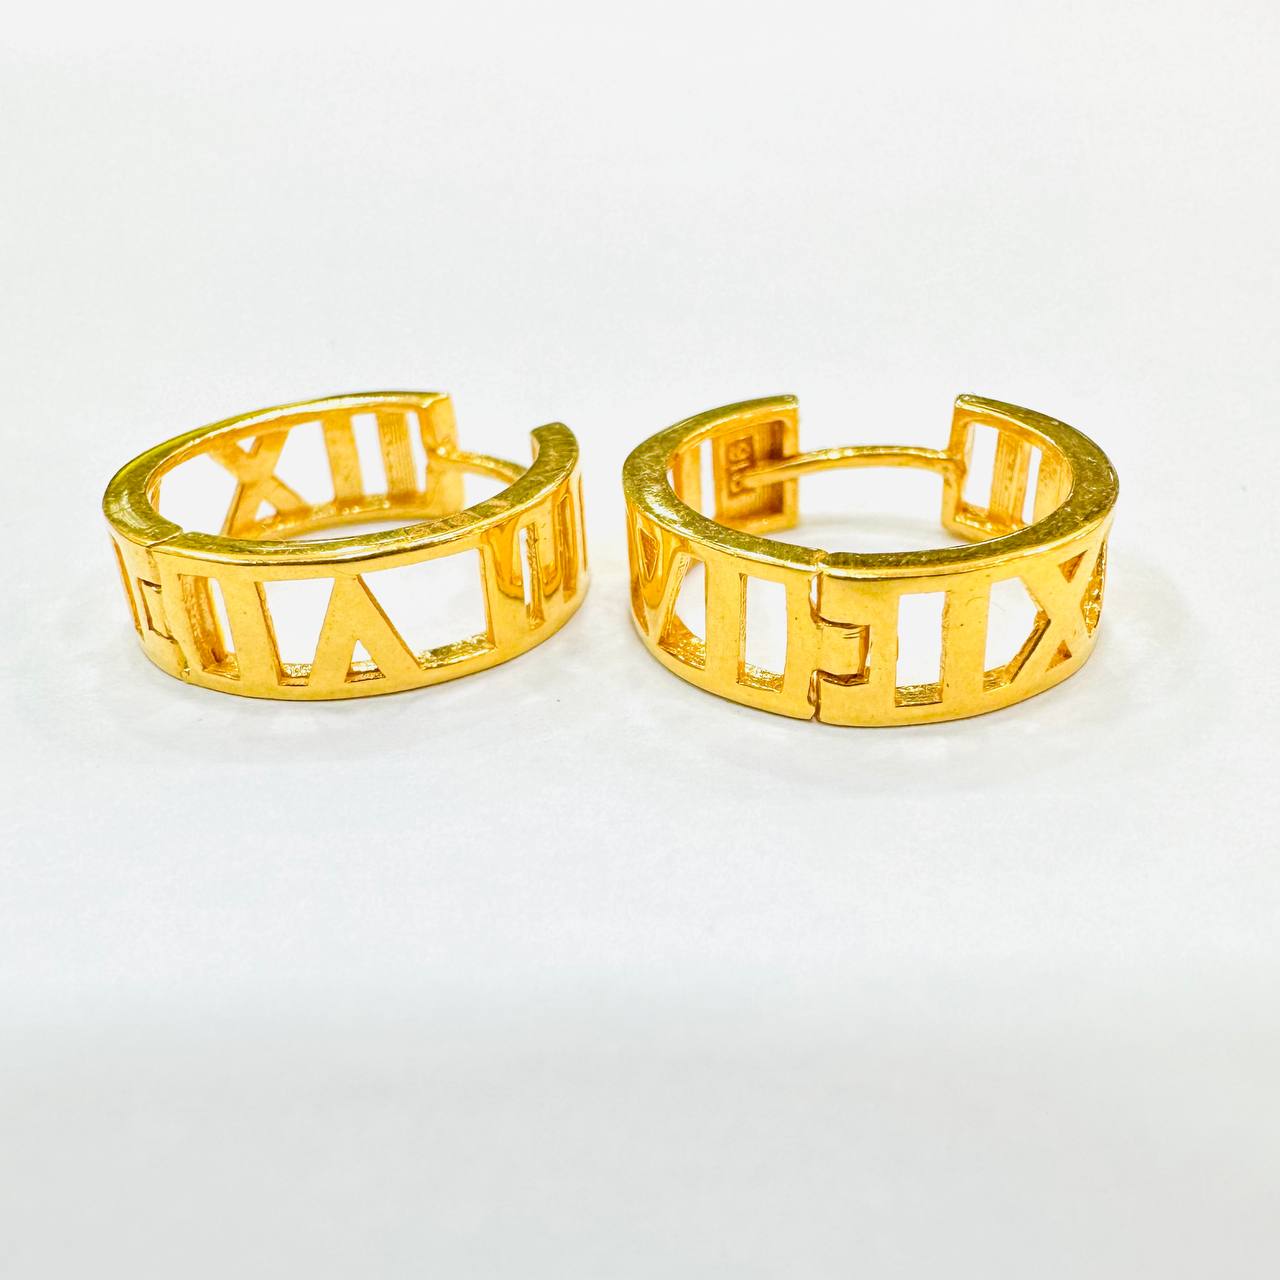 22k / 916 Gold Roman Earring-916 gold-Best Gold Shop